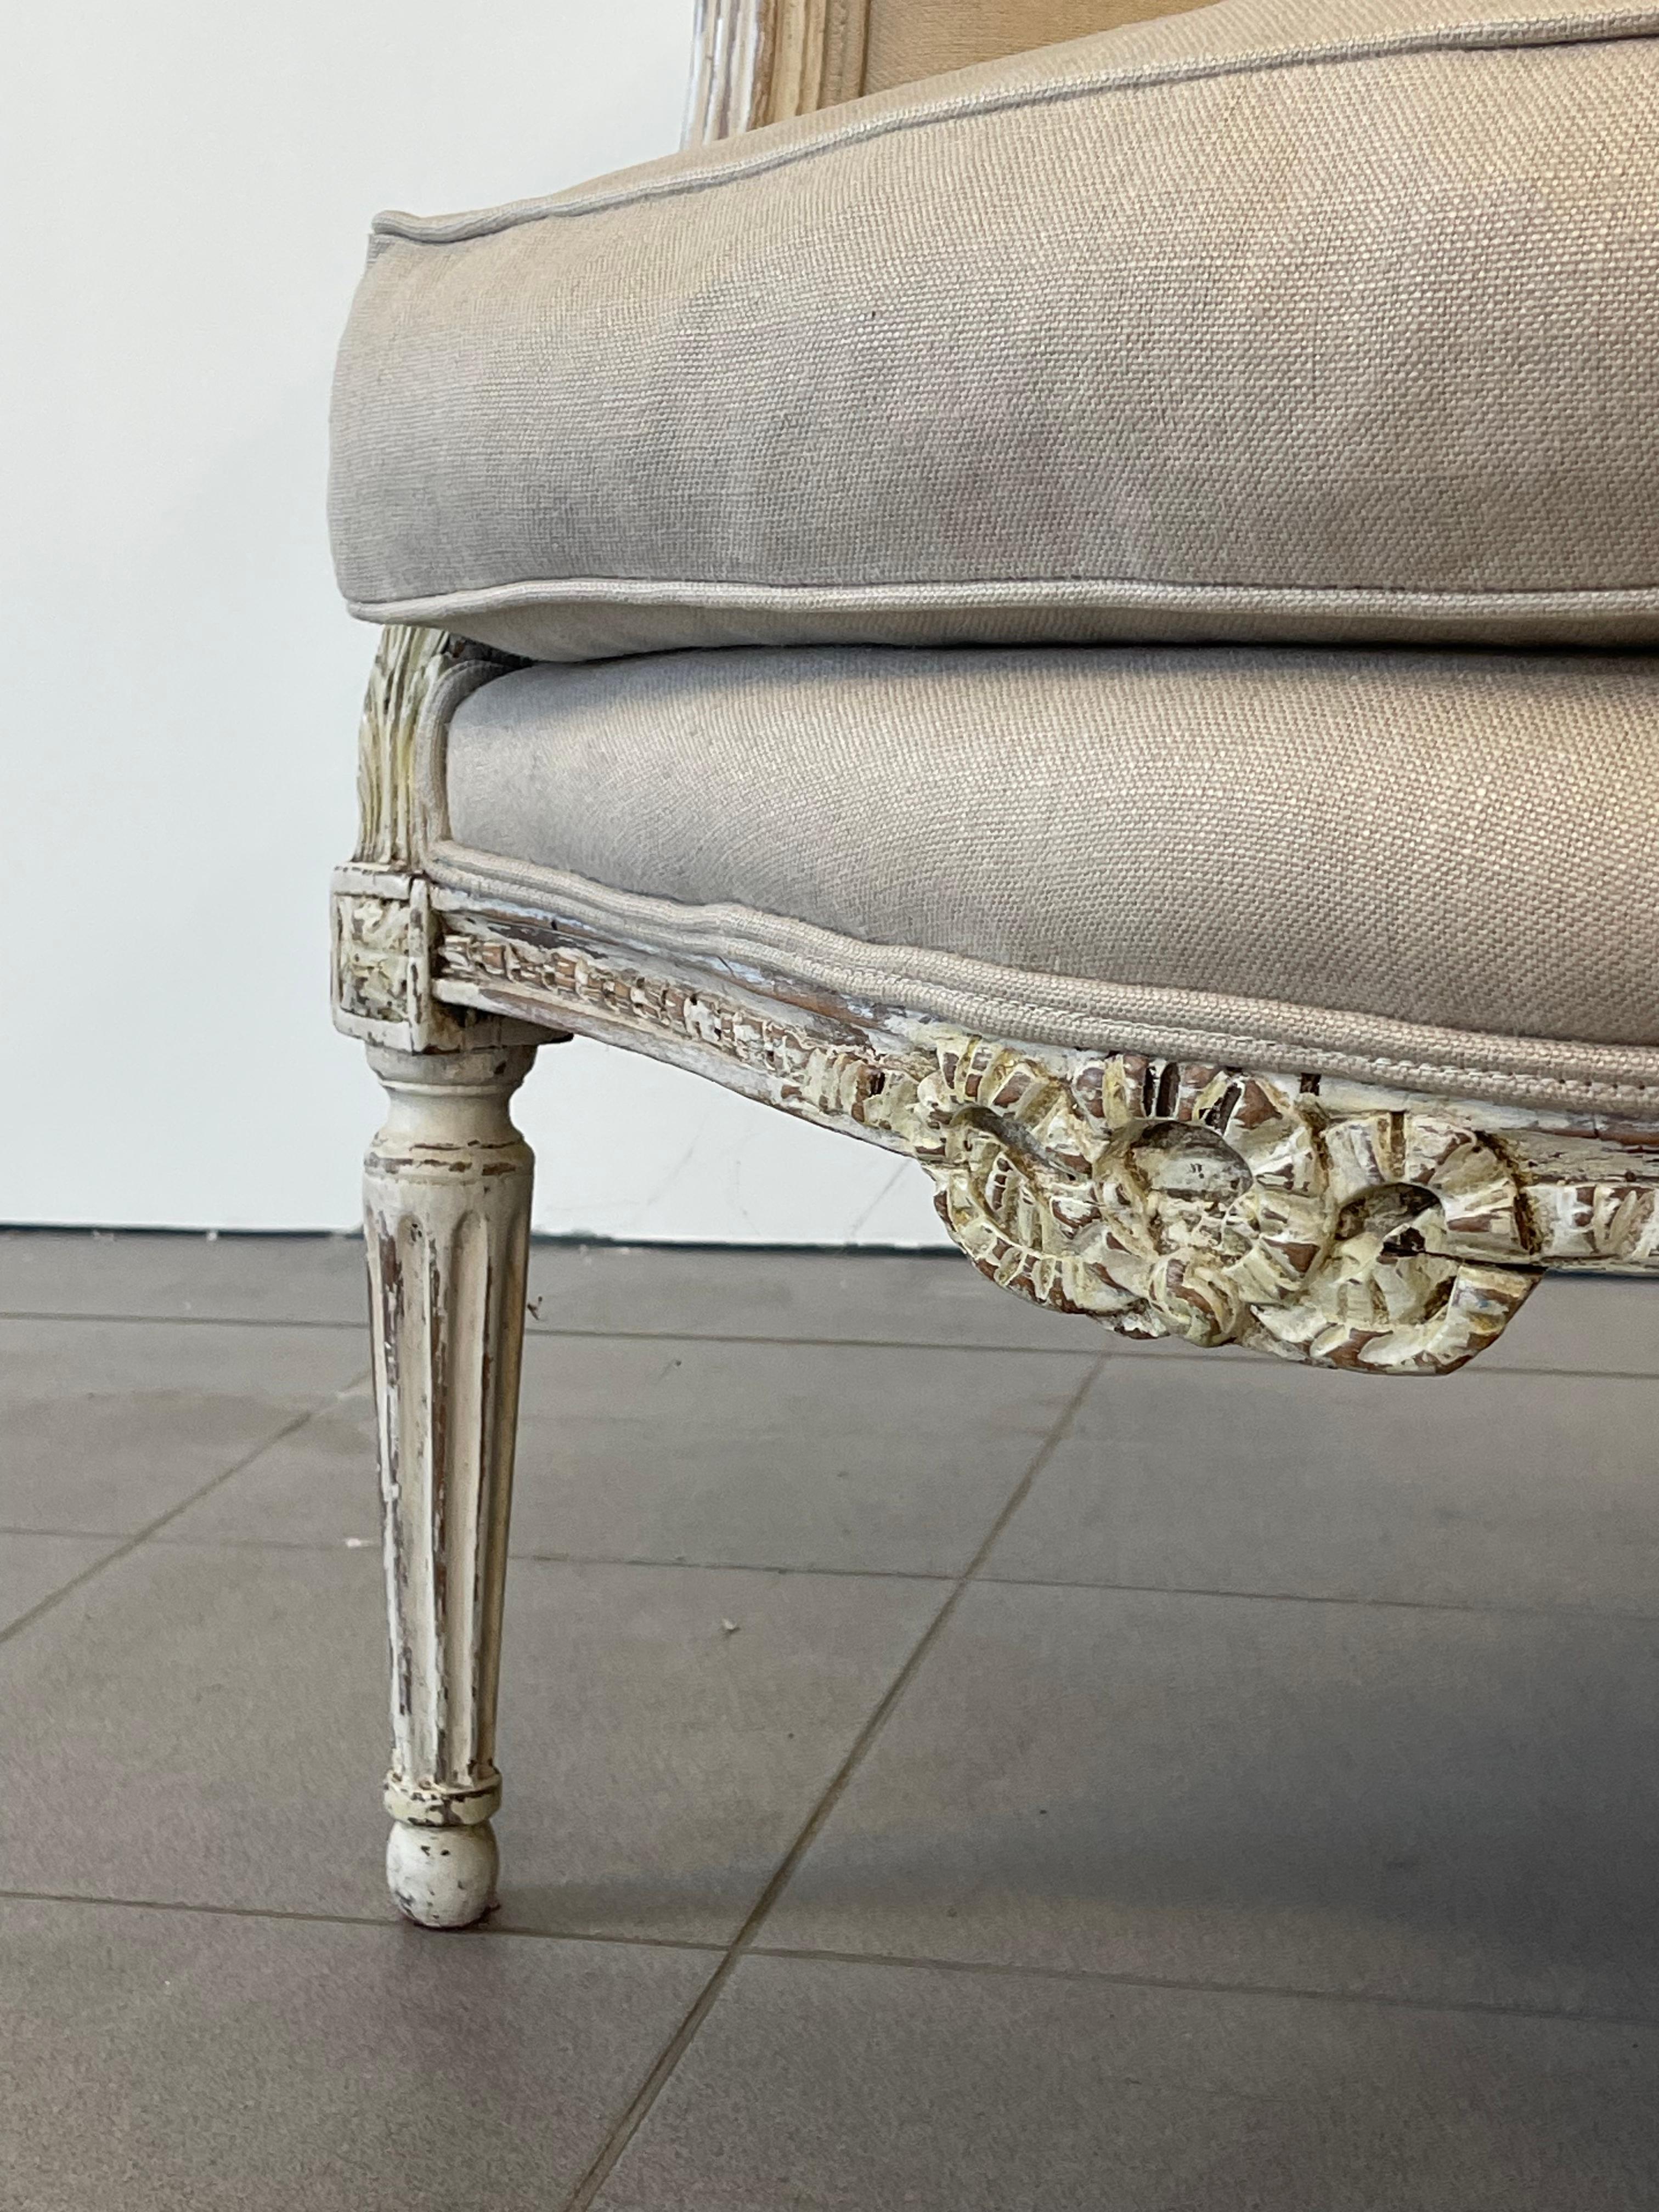 Magnifique fauteuil ou bergère Louis XVI tapissé de lin épais blanc